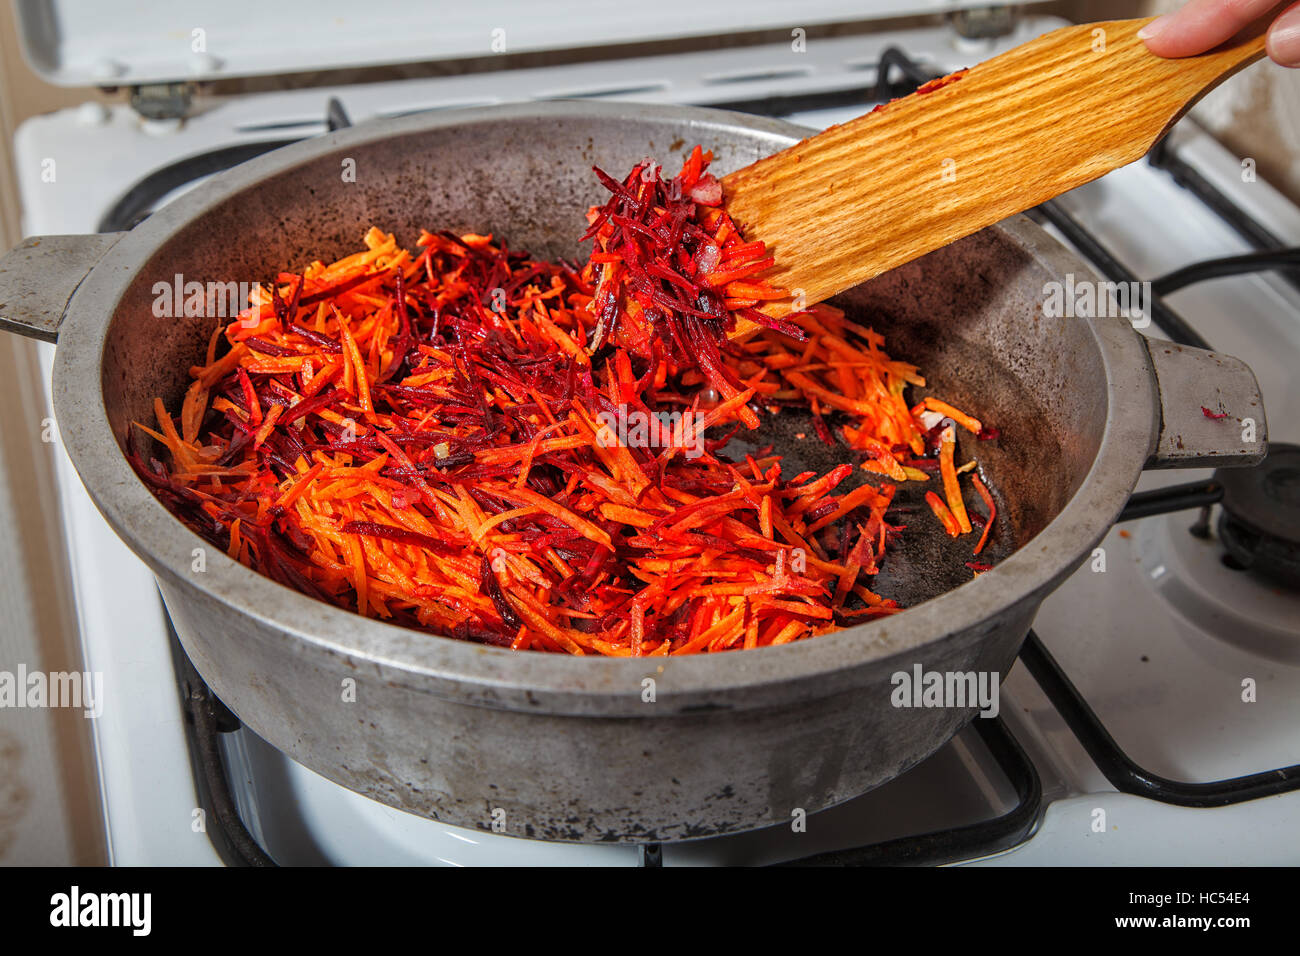 Braten in einer Pfanne Karotten und Rüben-Nahaufnahme Stockfotografie -  Alamy